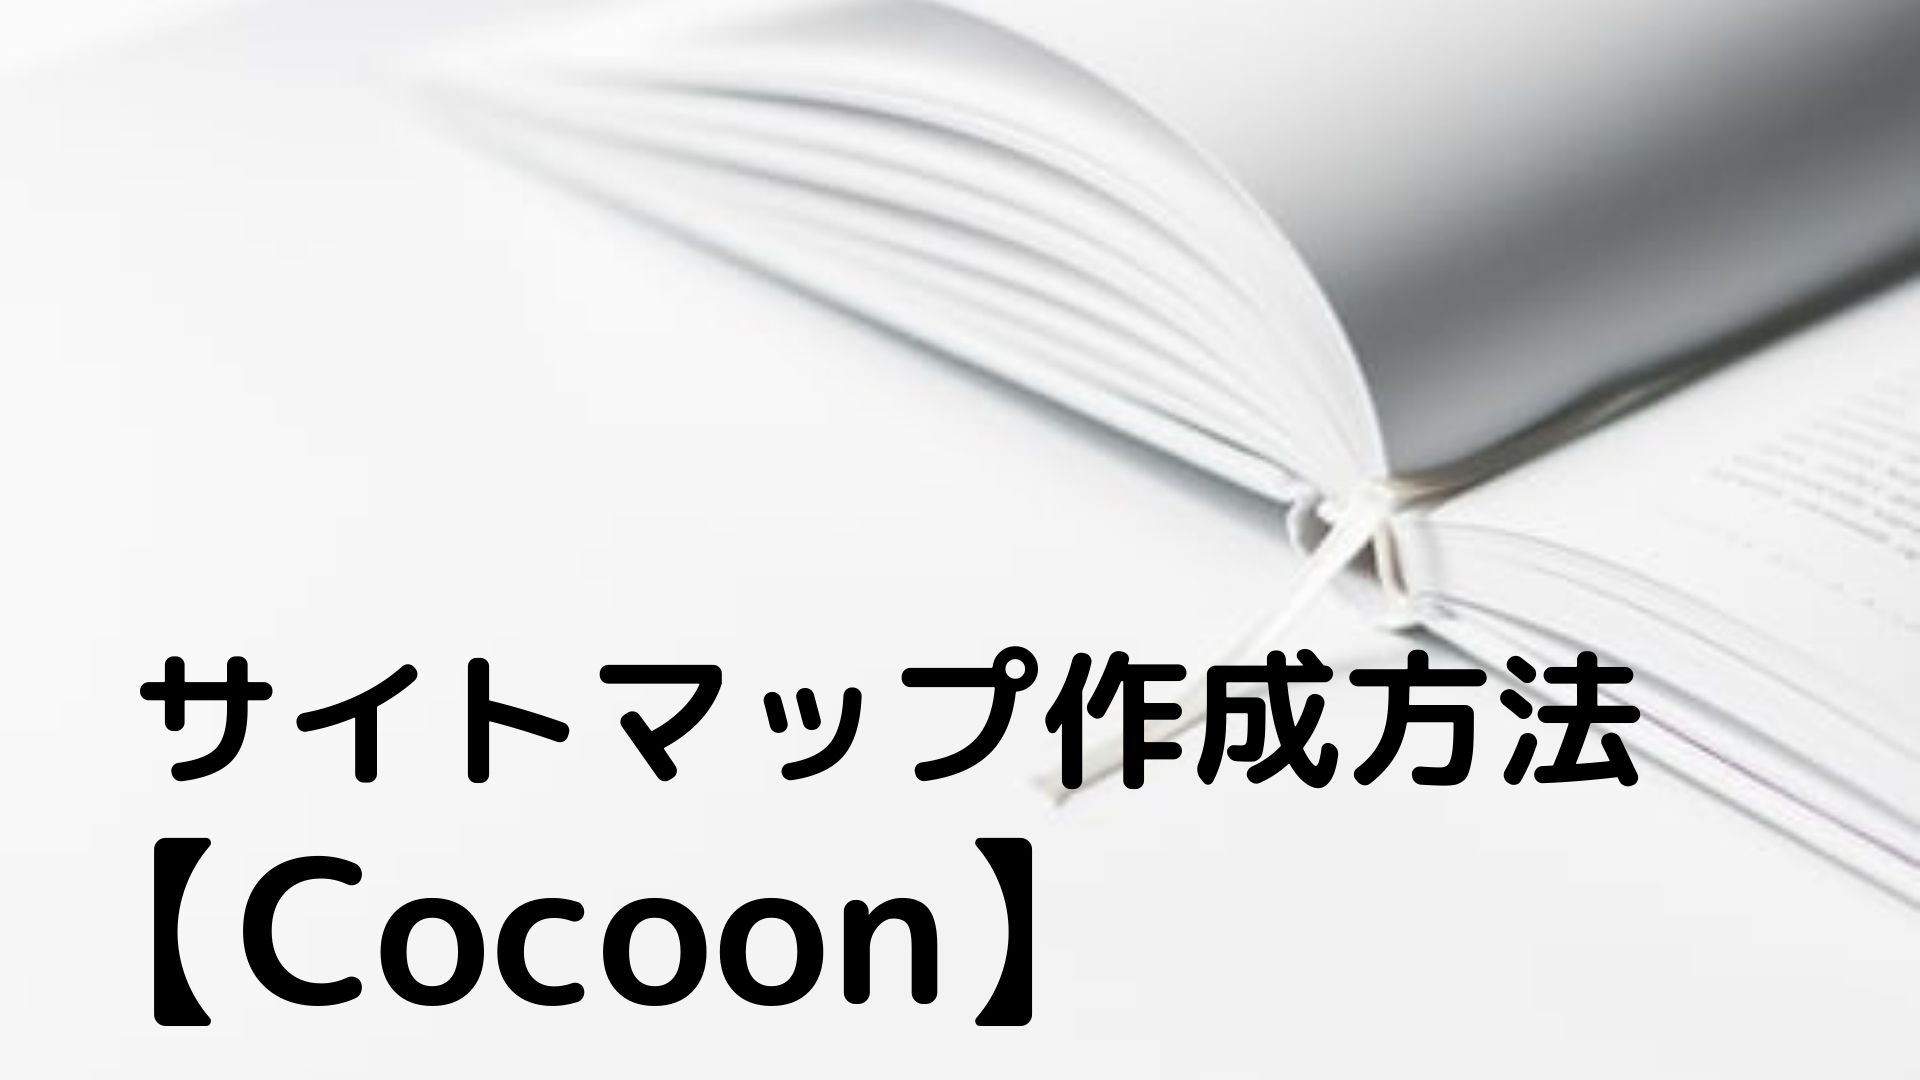 【Cocoon】 サイトマップ